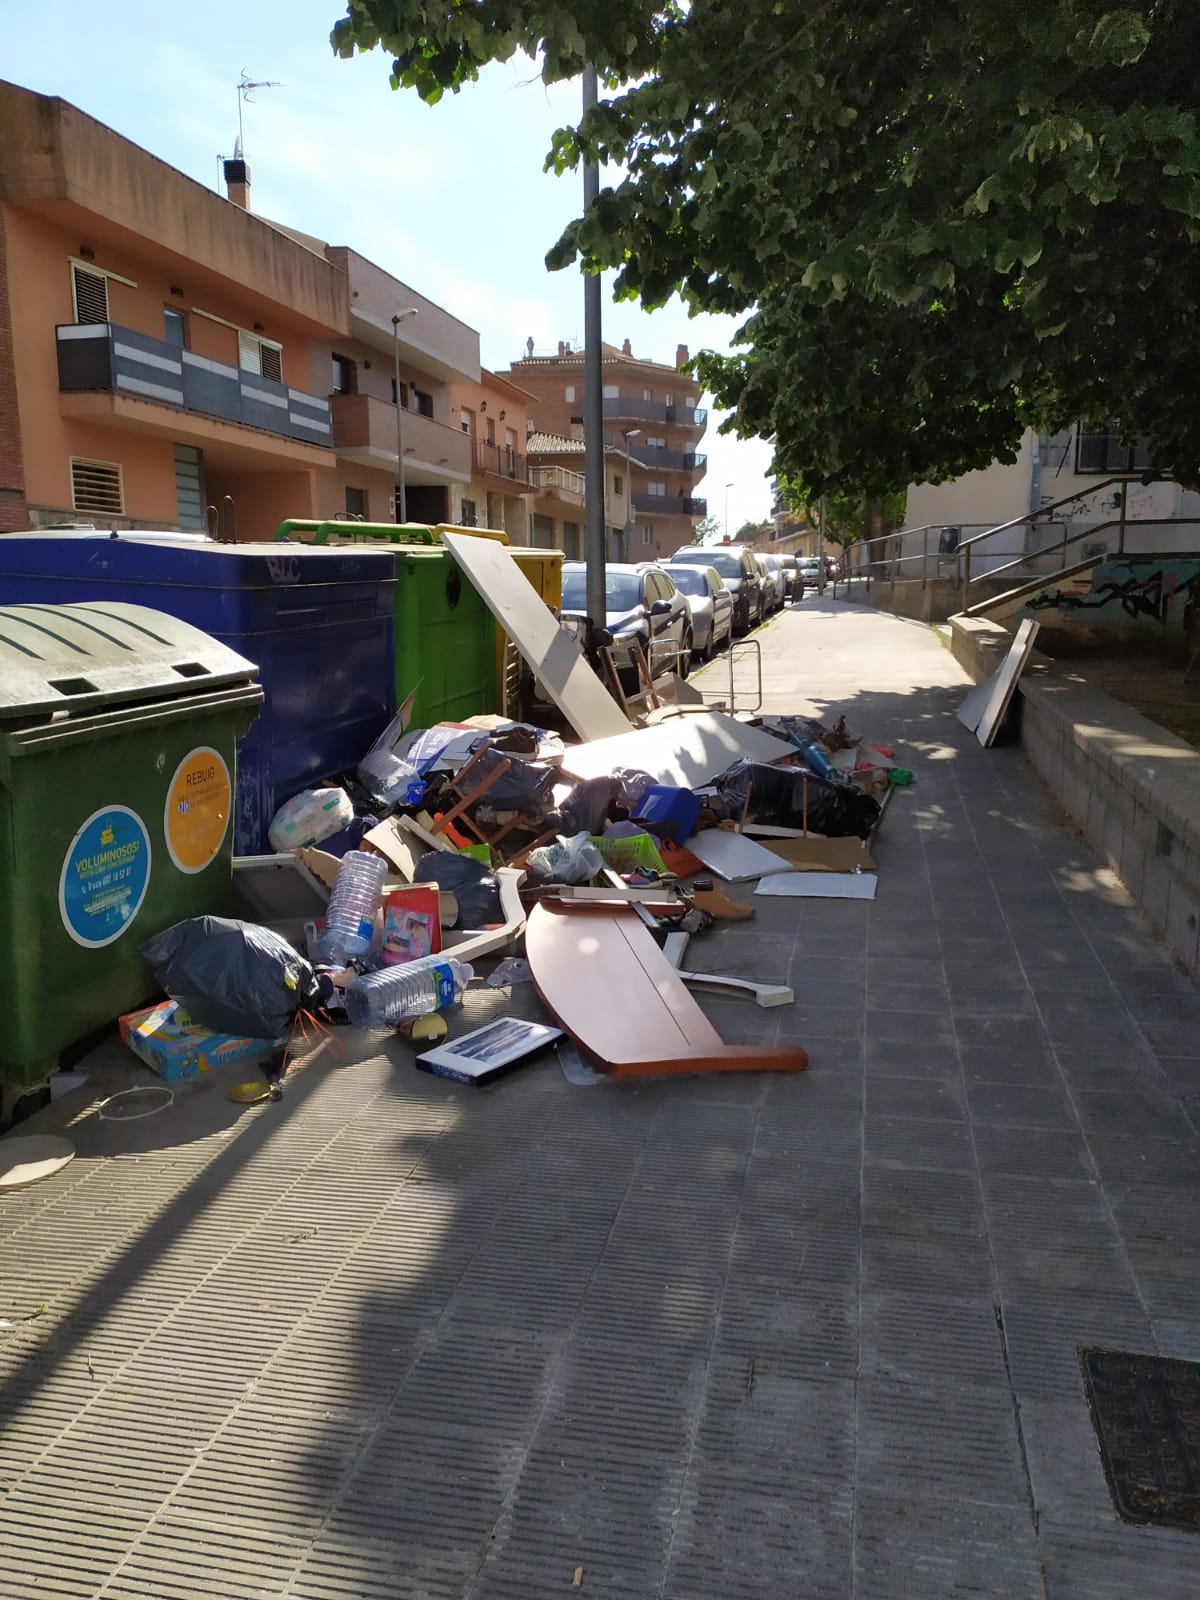 Residus fora dels contenidors en un carrer de Sant Celoni